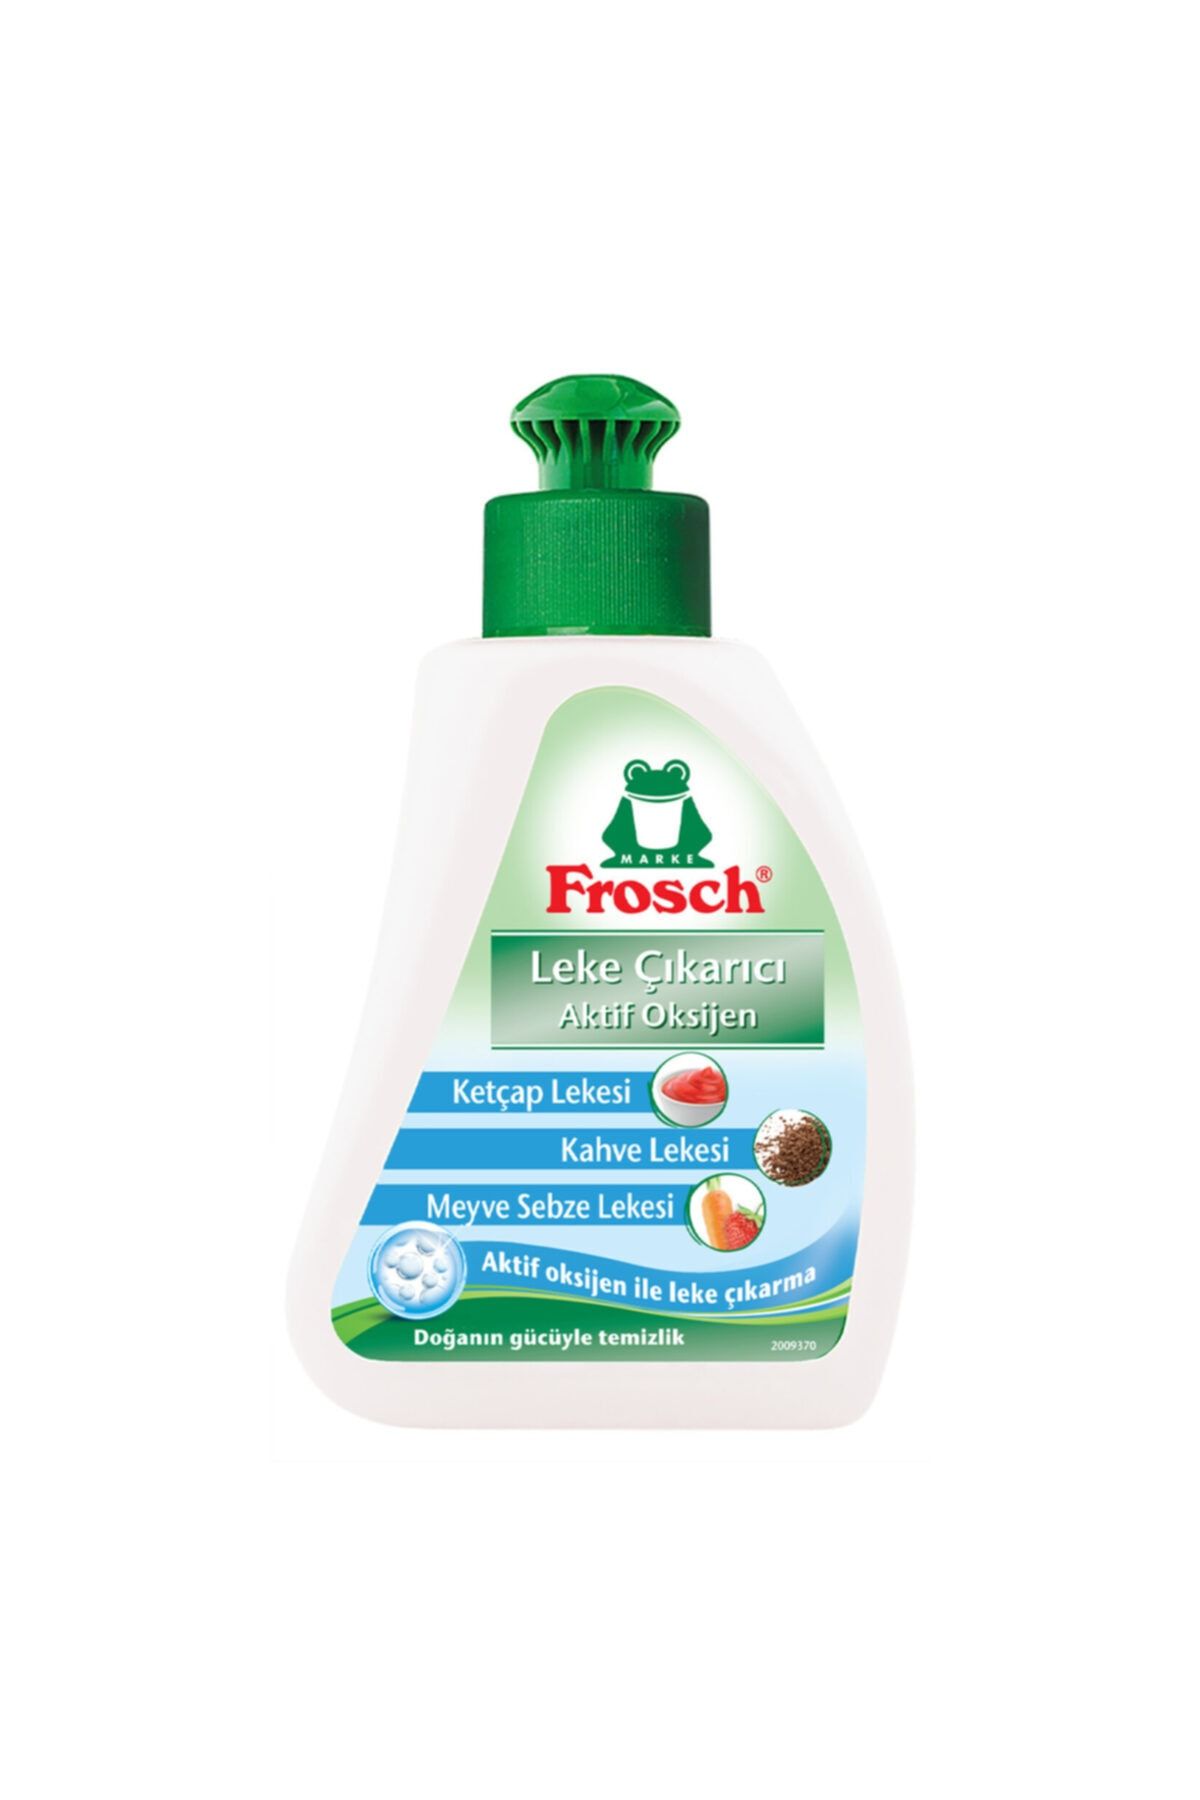 Frosch Leke Çıkarıcı Aktif Oksijen 75 ml